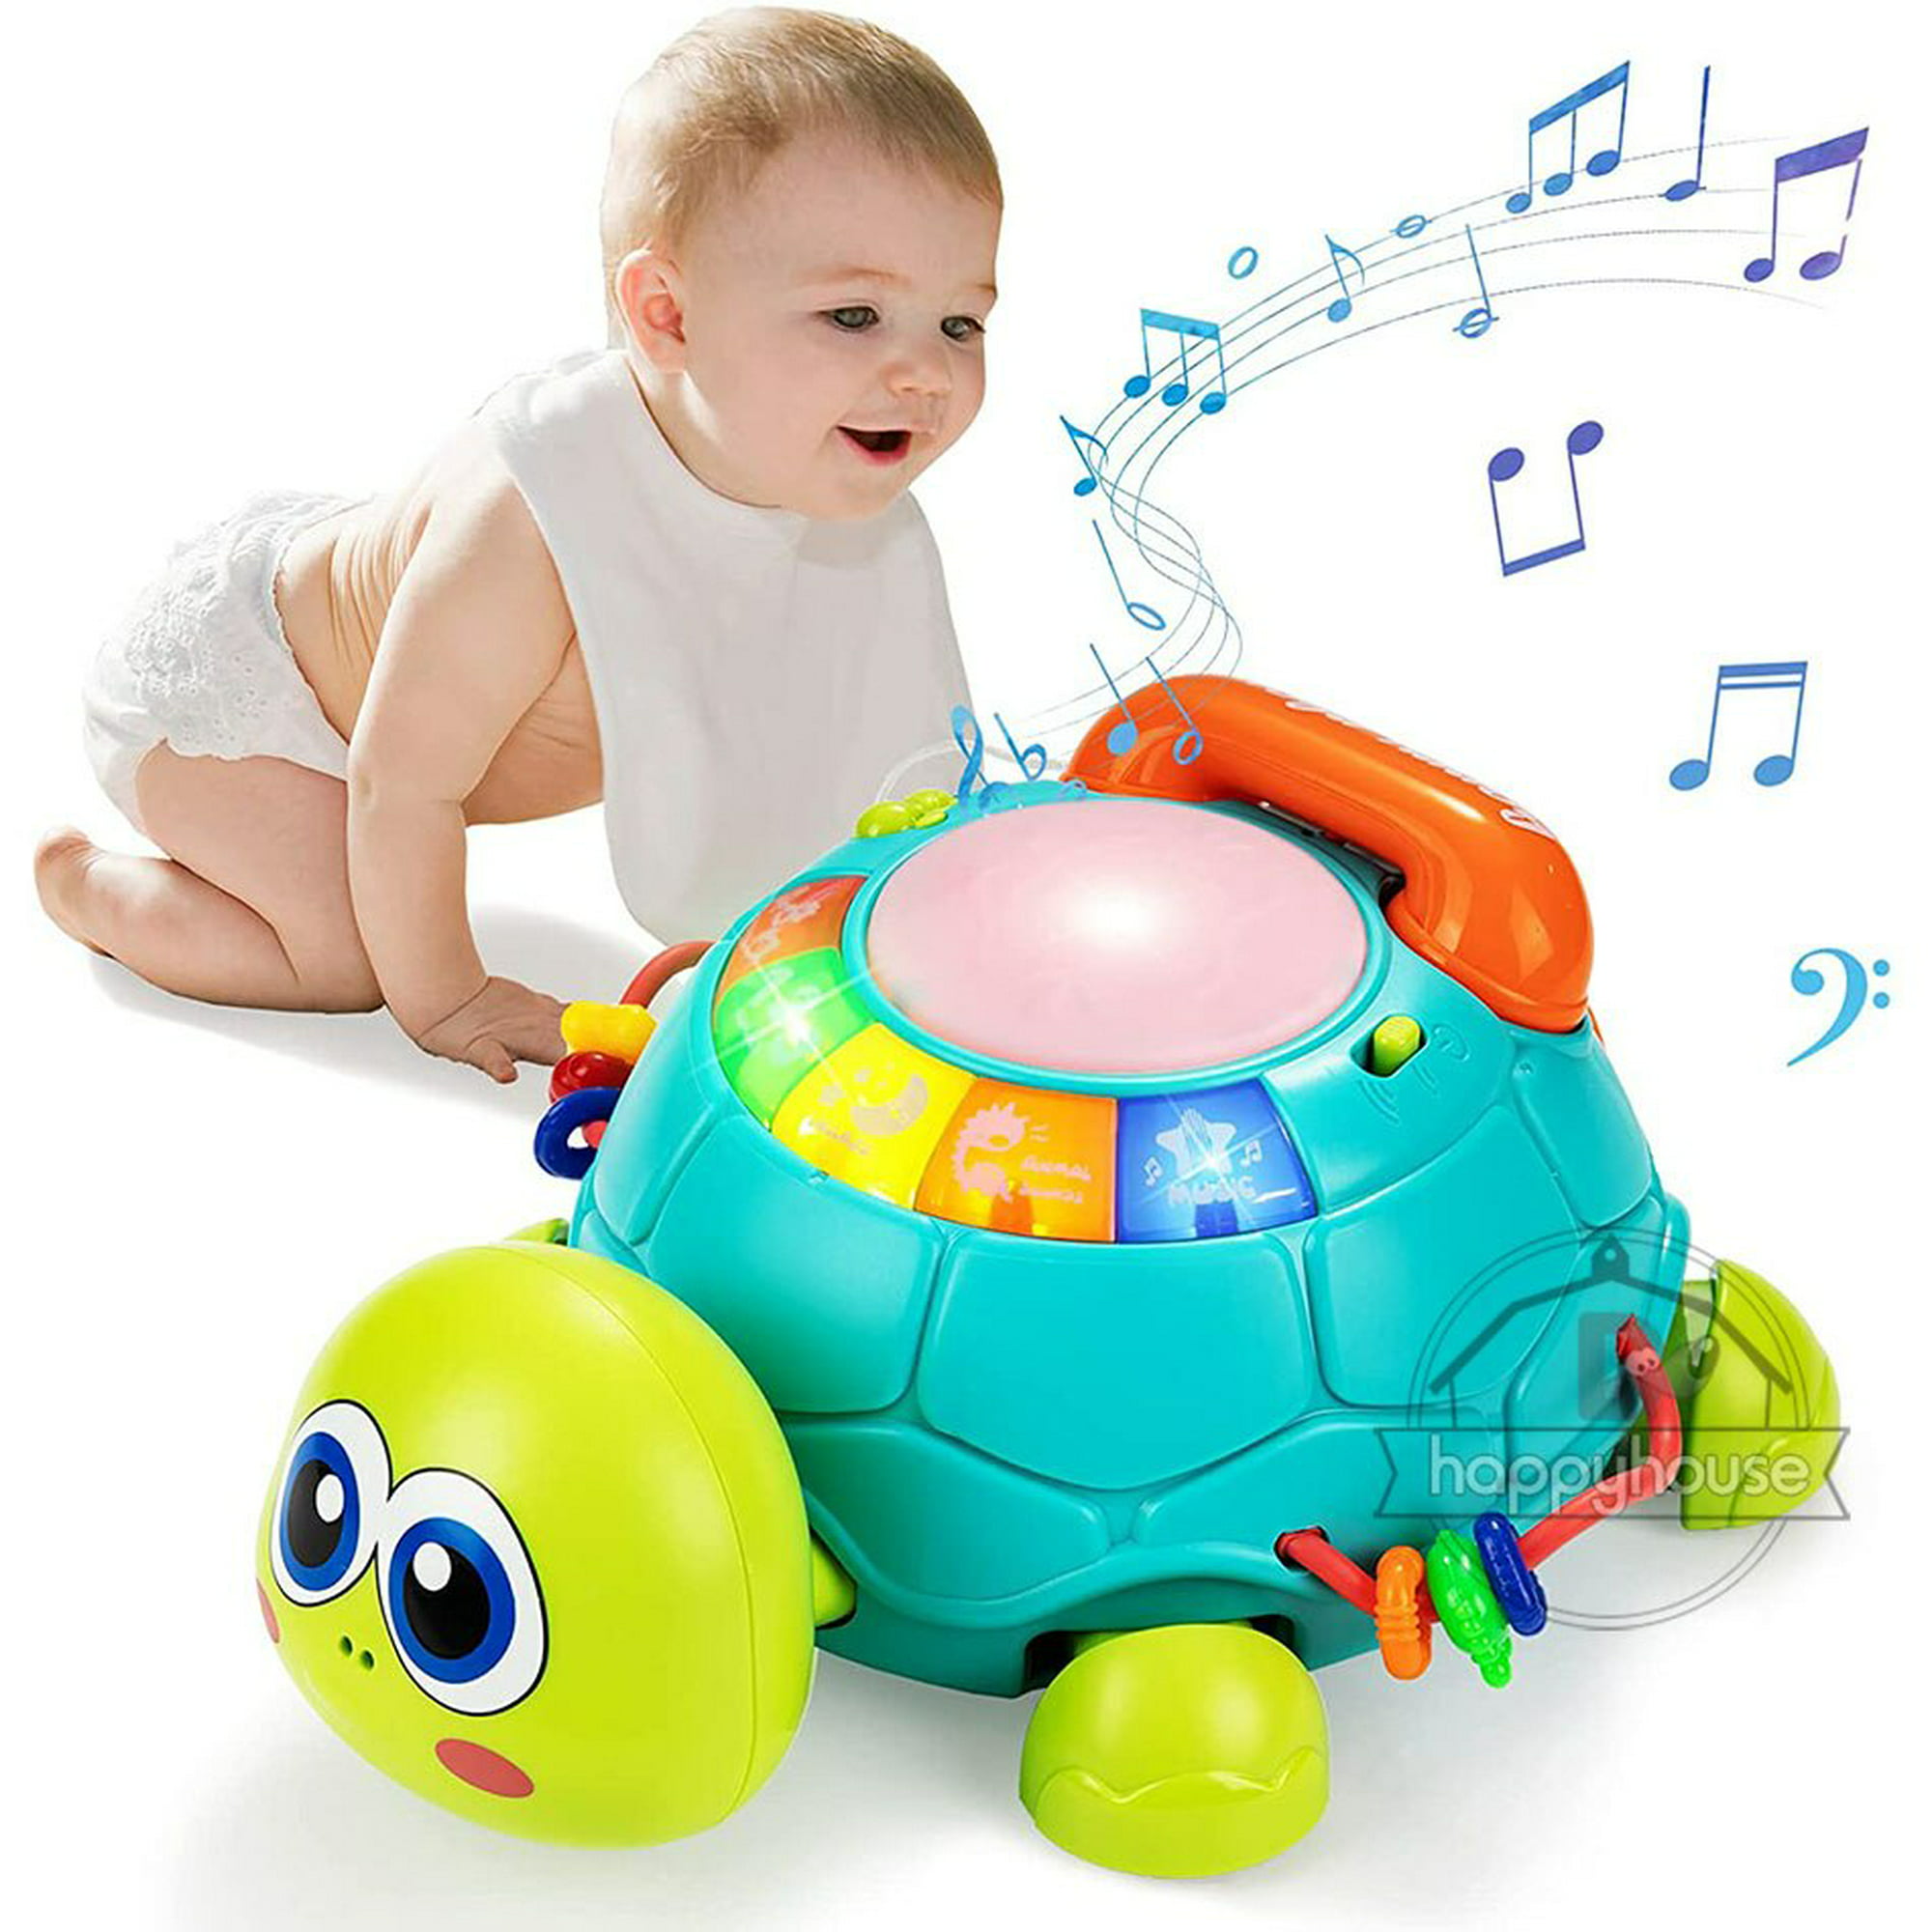 Juguetes de teléfono móvil Montessori para niños, juguetes de piano musical  para niña, juguetes de teléfono móvil para niños de 2 a 4 años, de 0 a 12